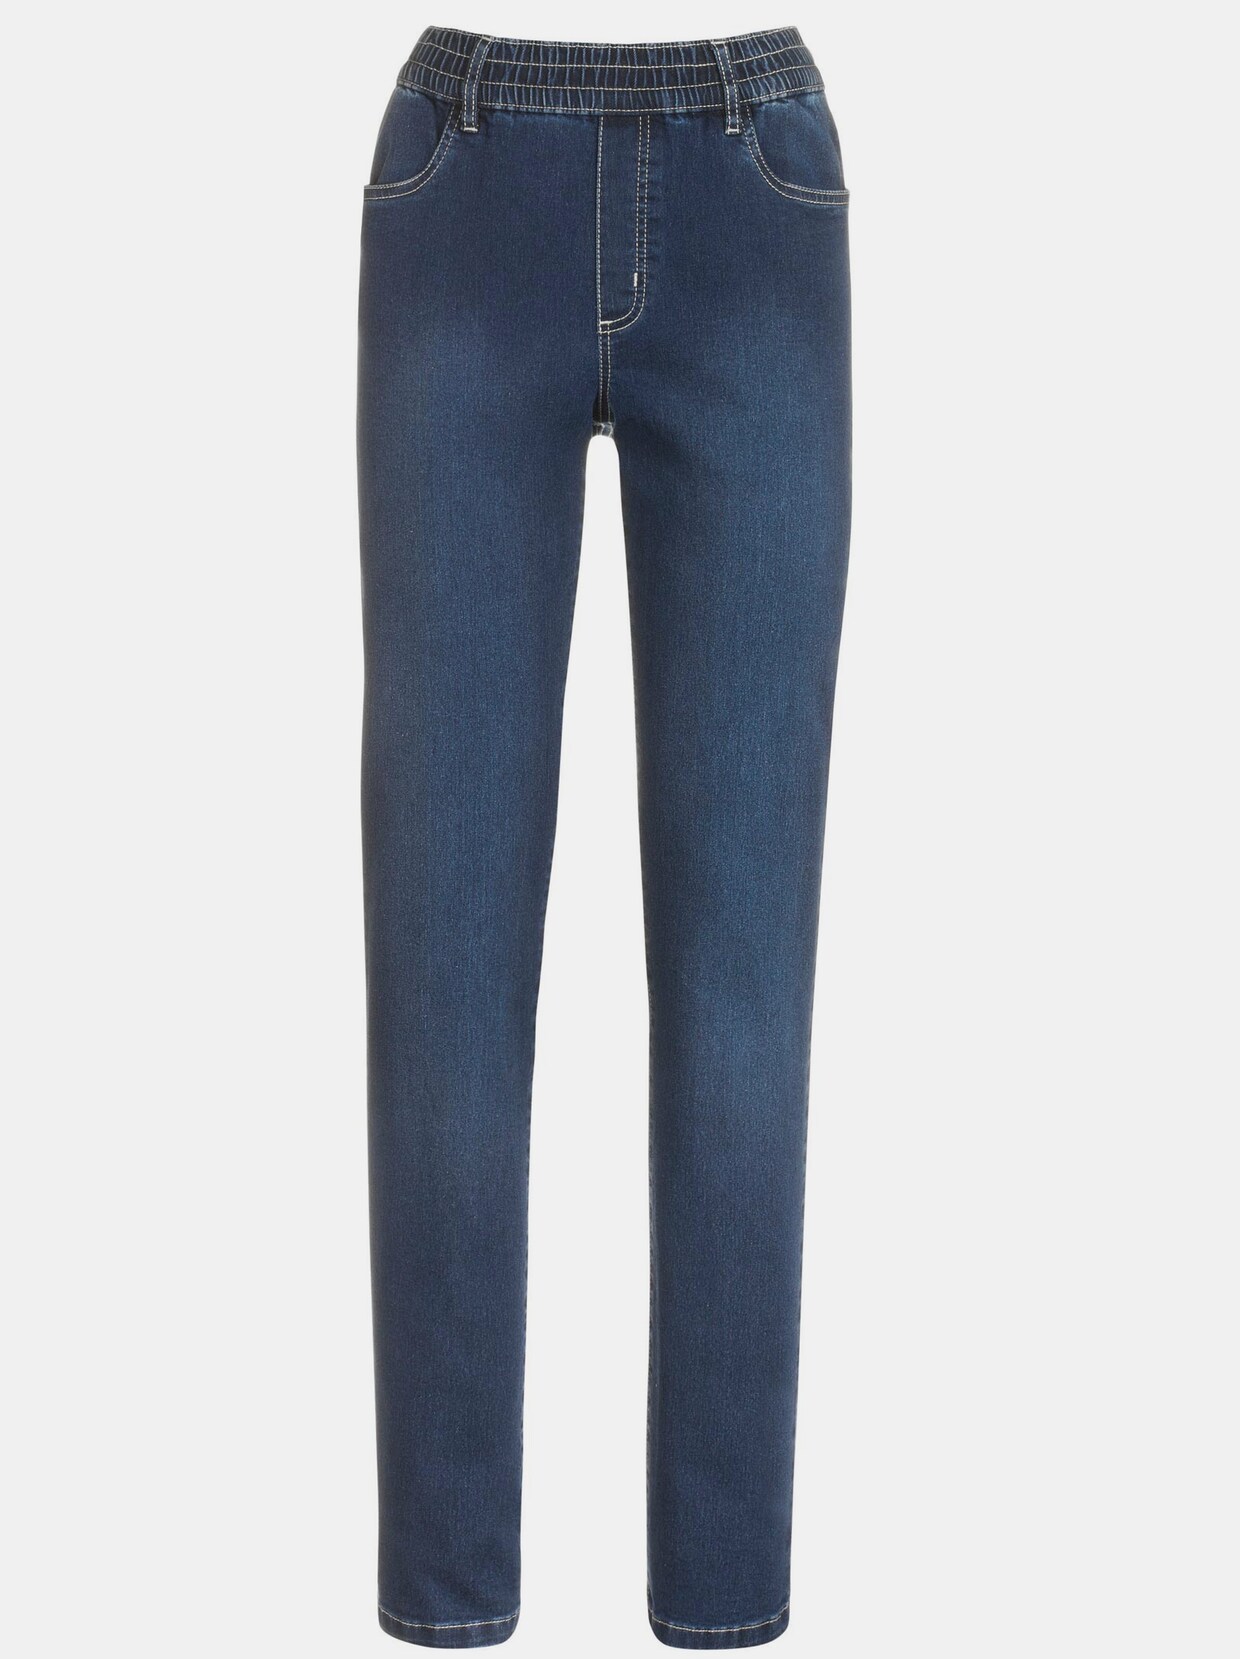 jean taille haute - bleu délavé